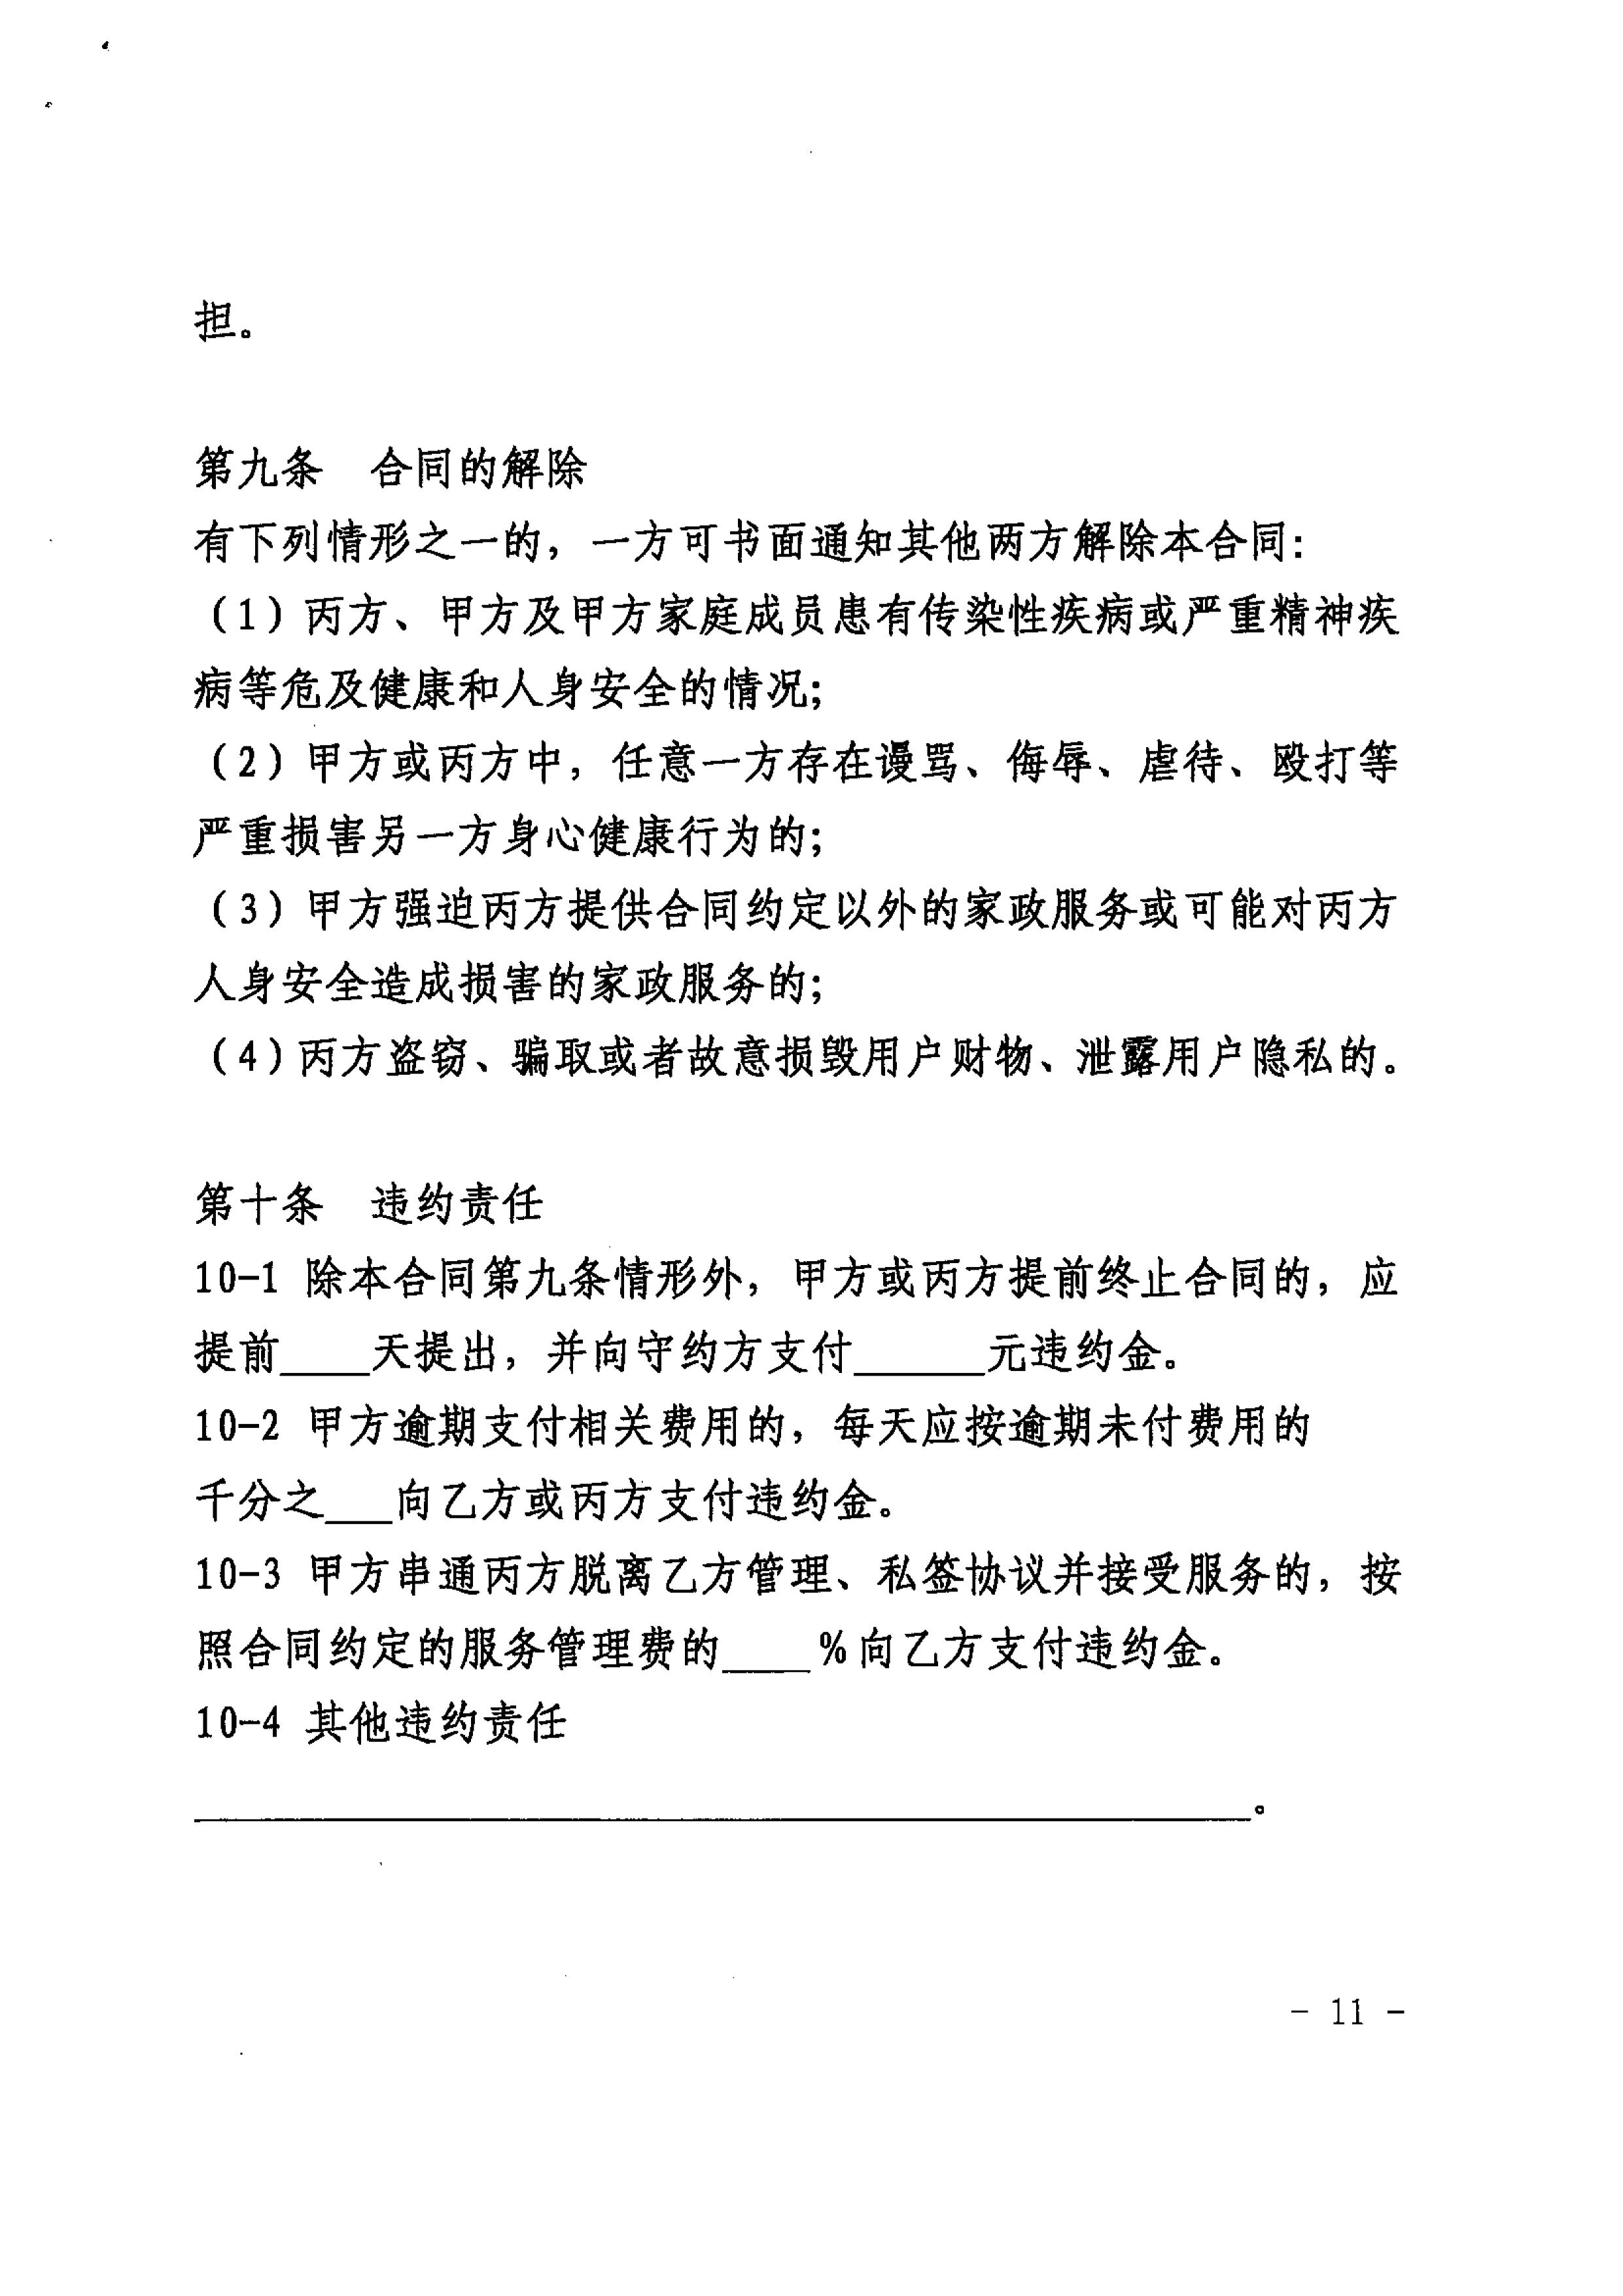 关于推广使用《上海市家政服务合同示范文本》的通知_11